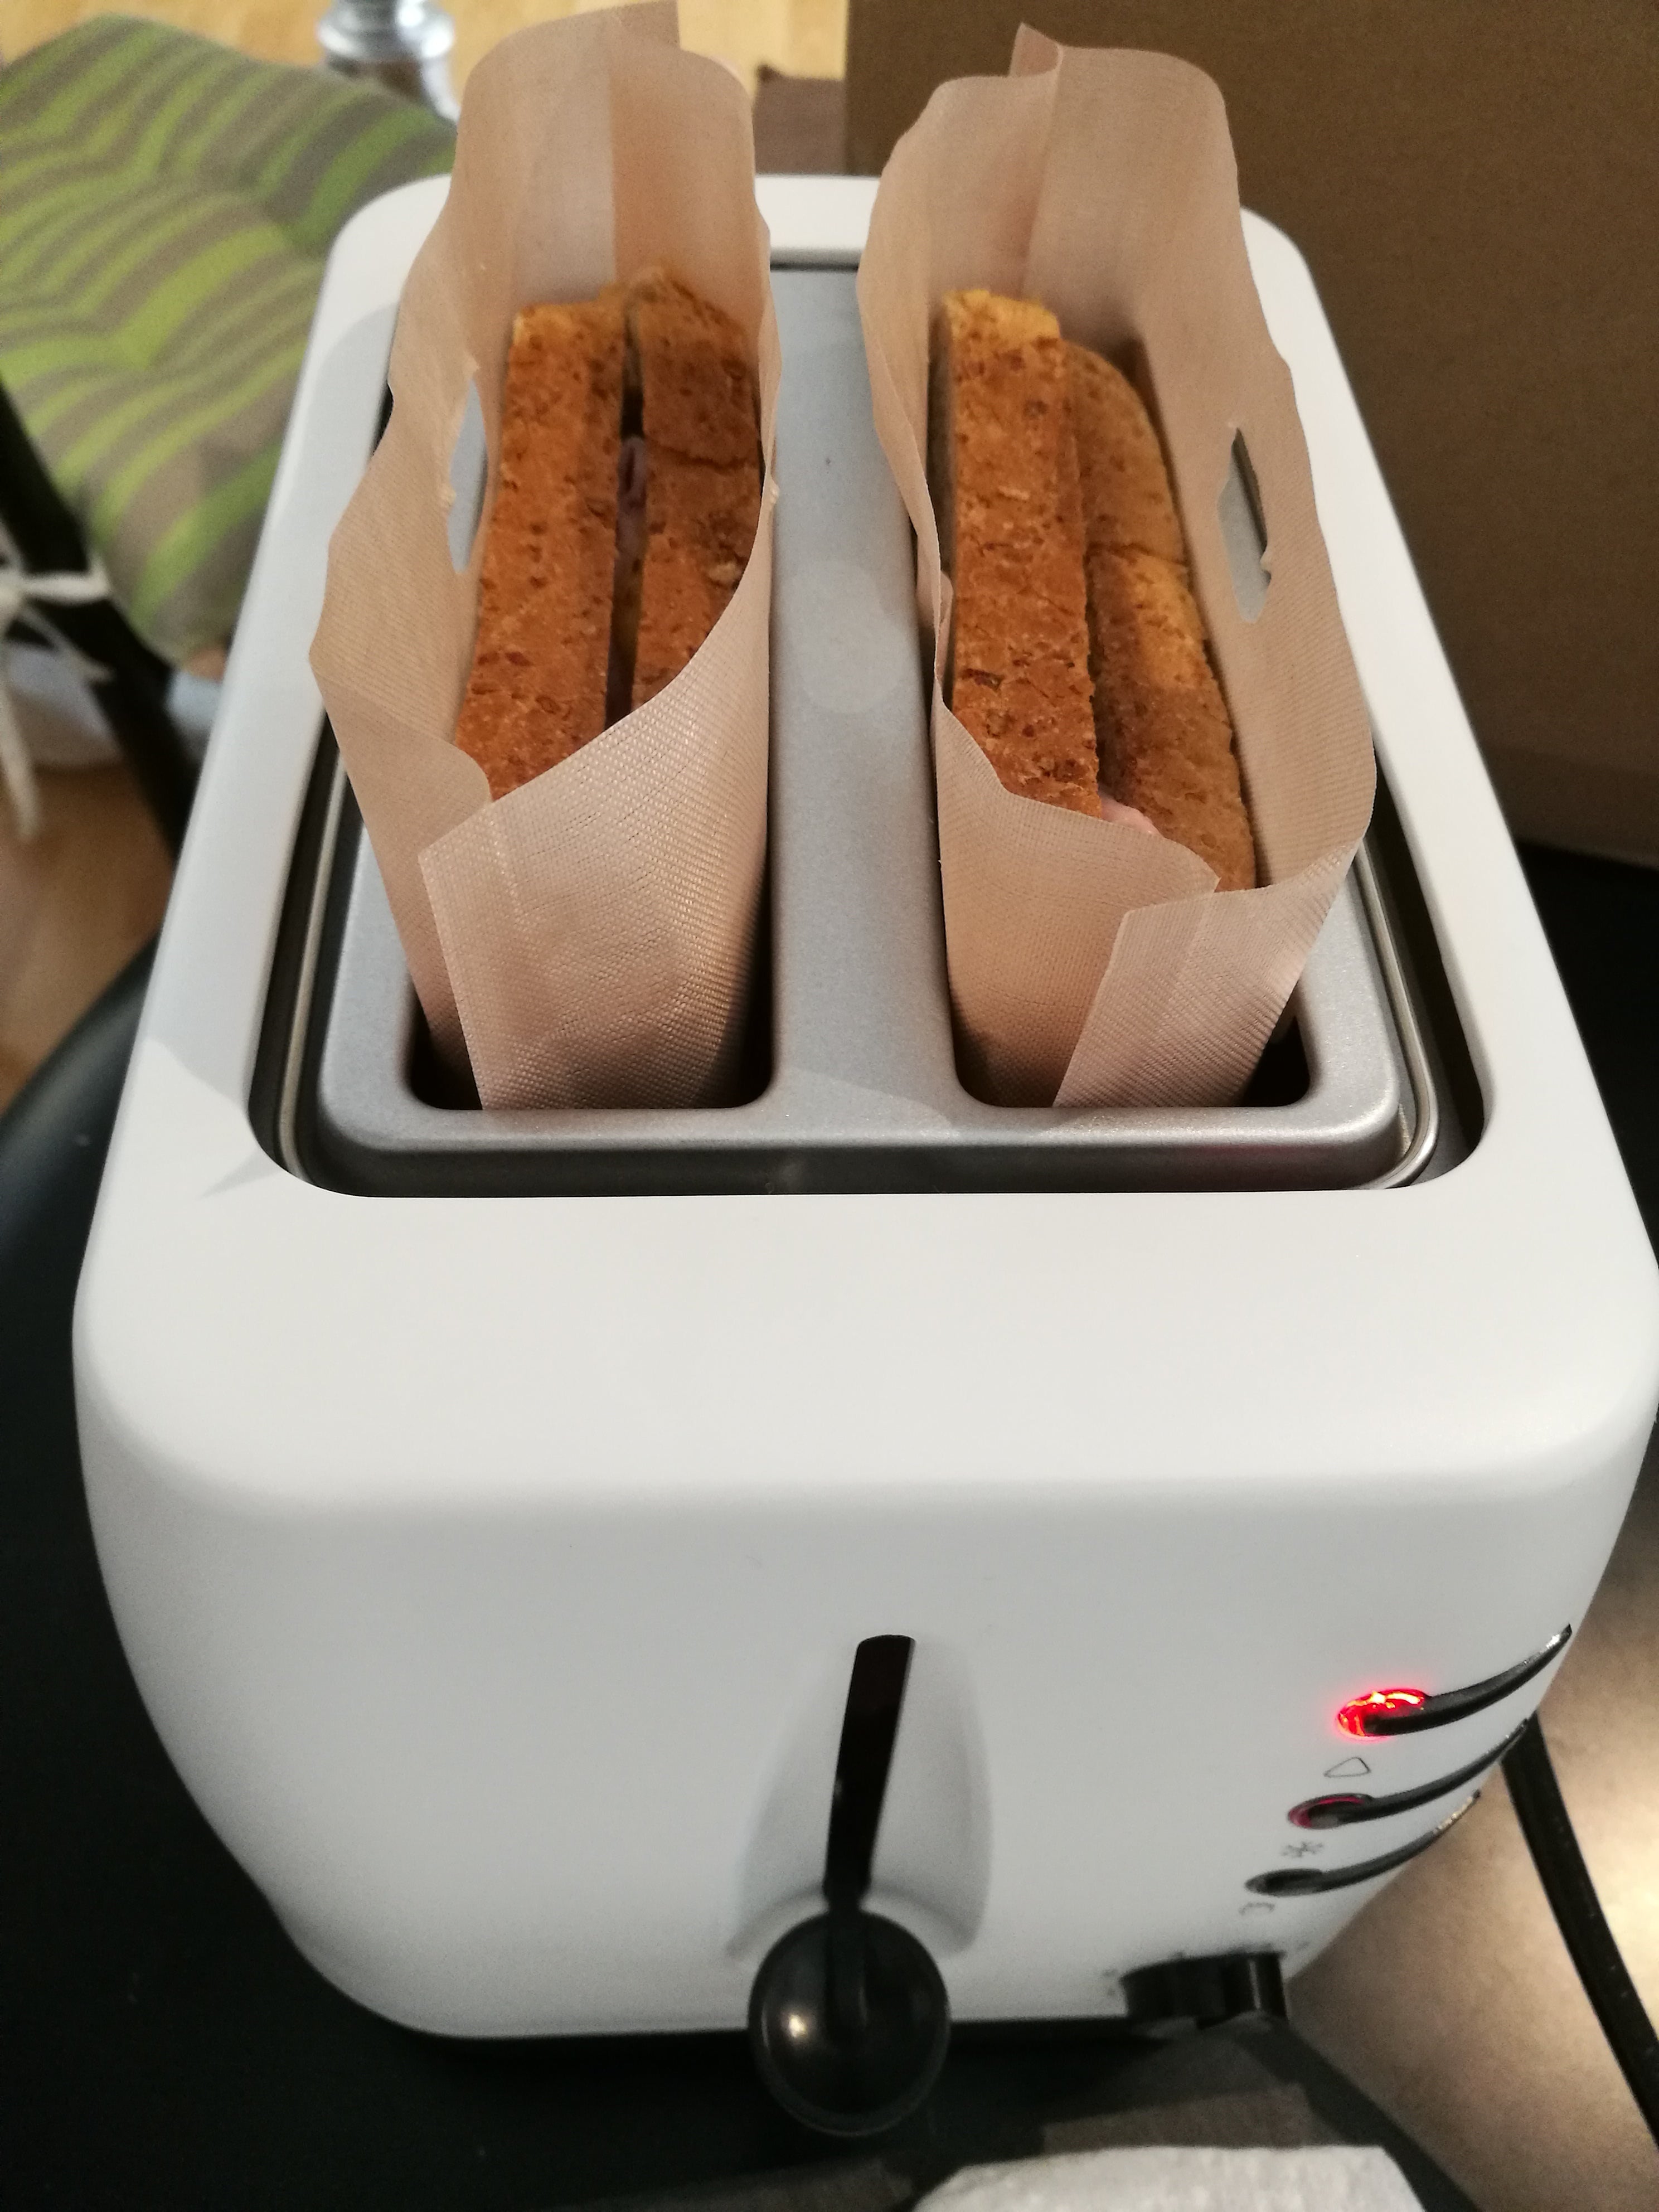 Super, schmackhafte Sandwich - und der Toaster bleibt sauer